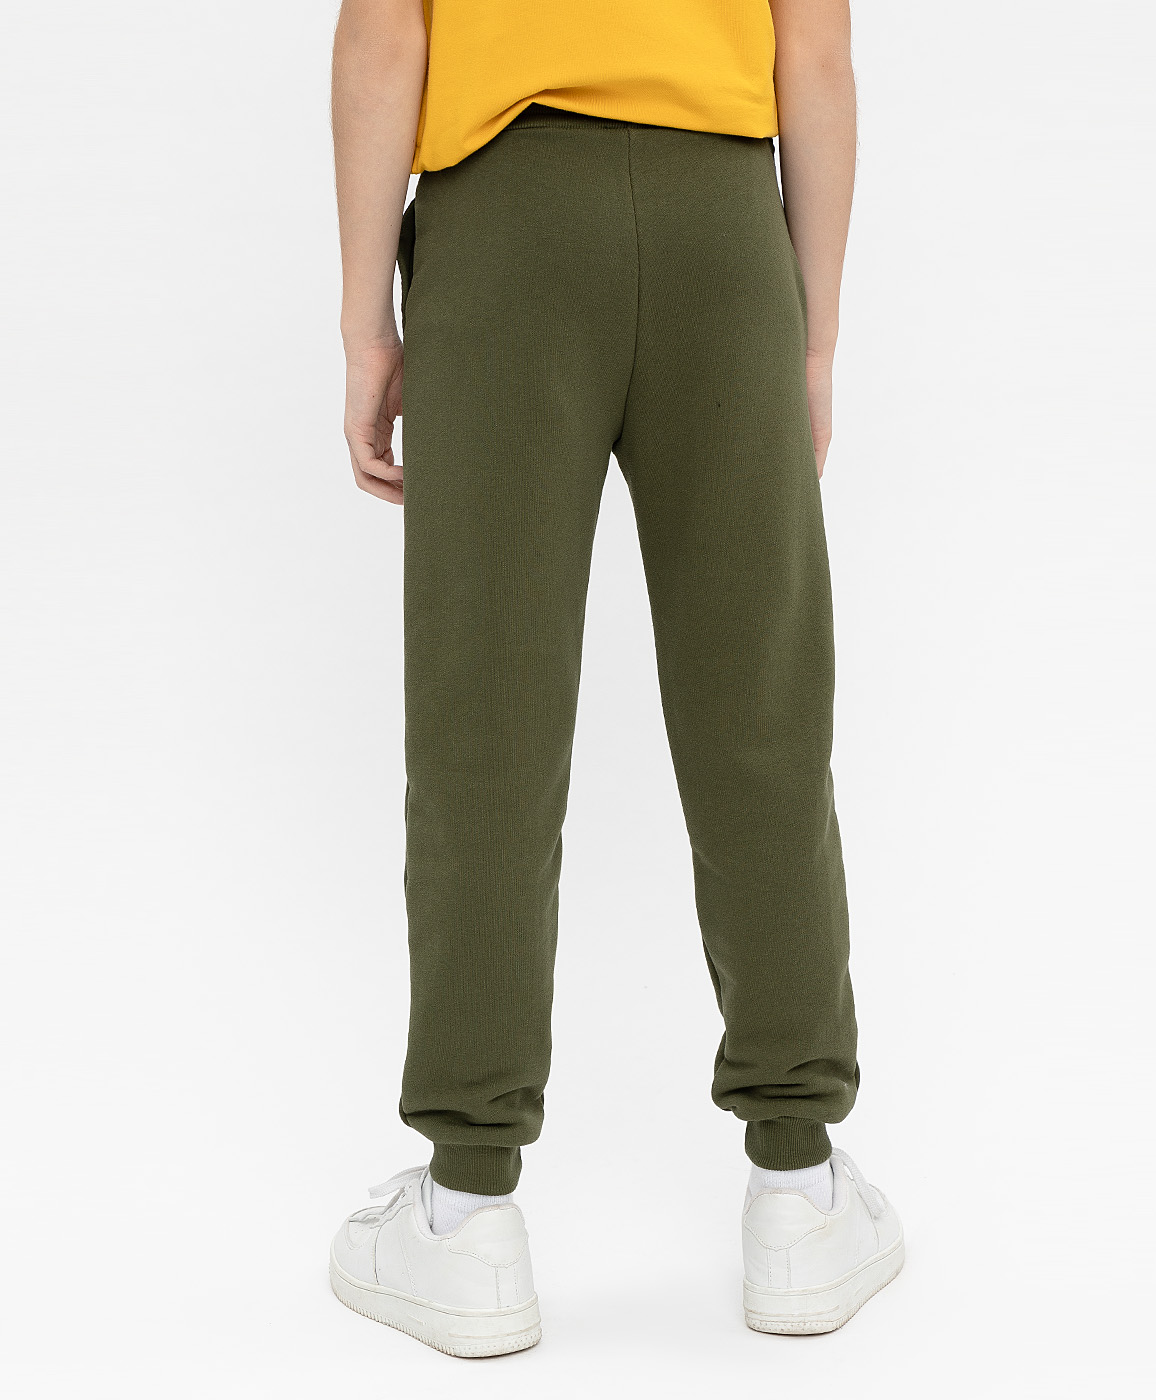 Nike штаны оливковые. Найк брюки NSW TSH зеленые. Брюки спортивные BSZZ оливковые. Брюки мужские прямые оливковый. Блю хаки